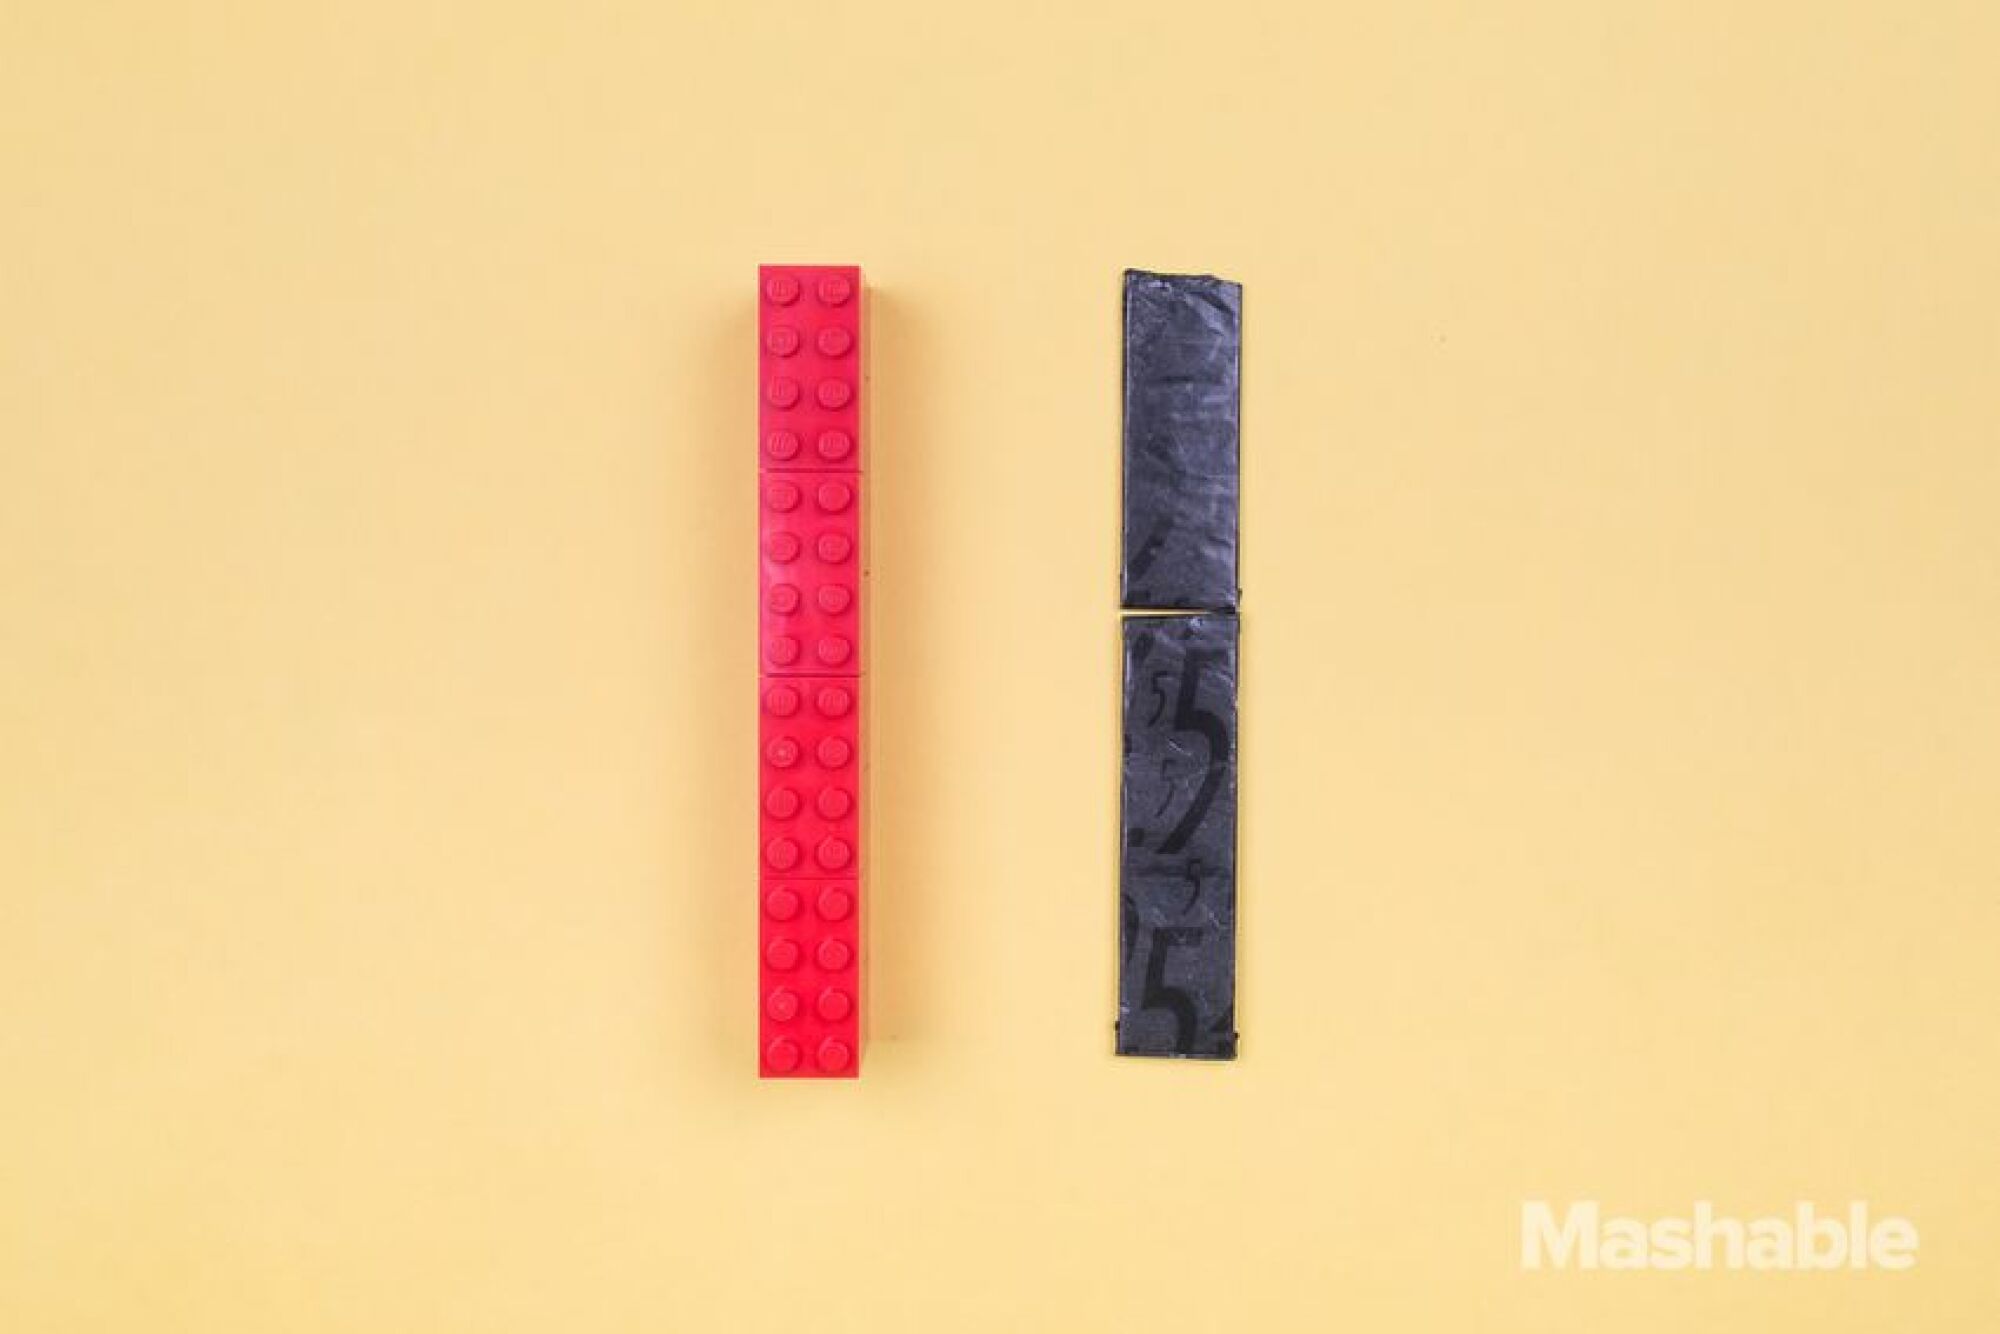 Le Lego rouge à côté de deux bâtons de chewing-gum, dont l'un a été légèrement raccourci.